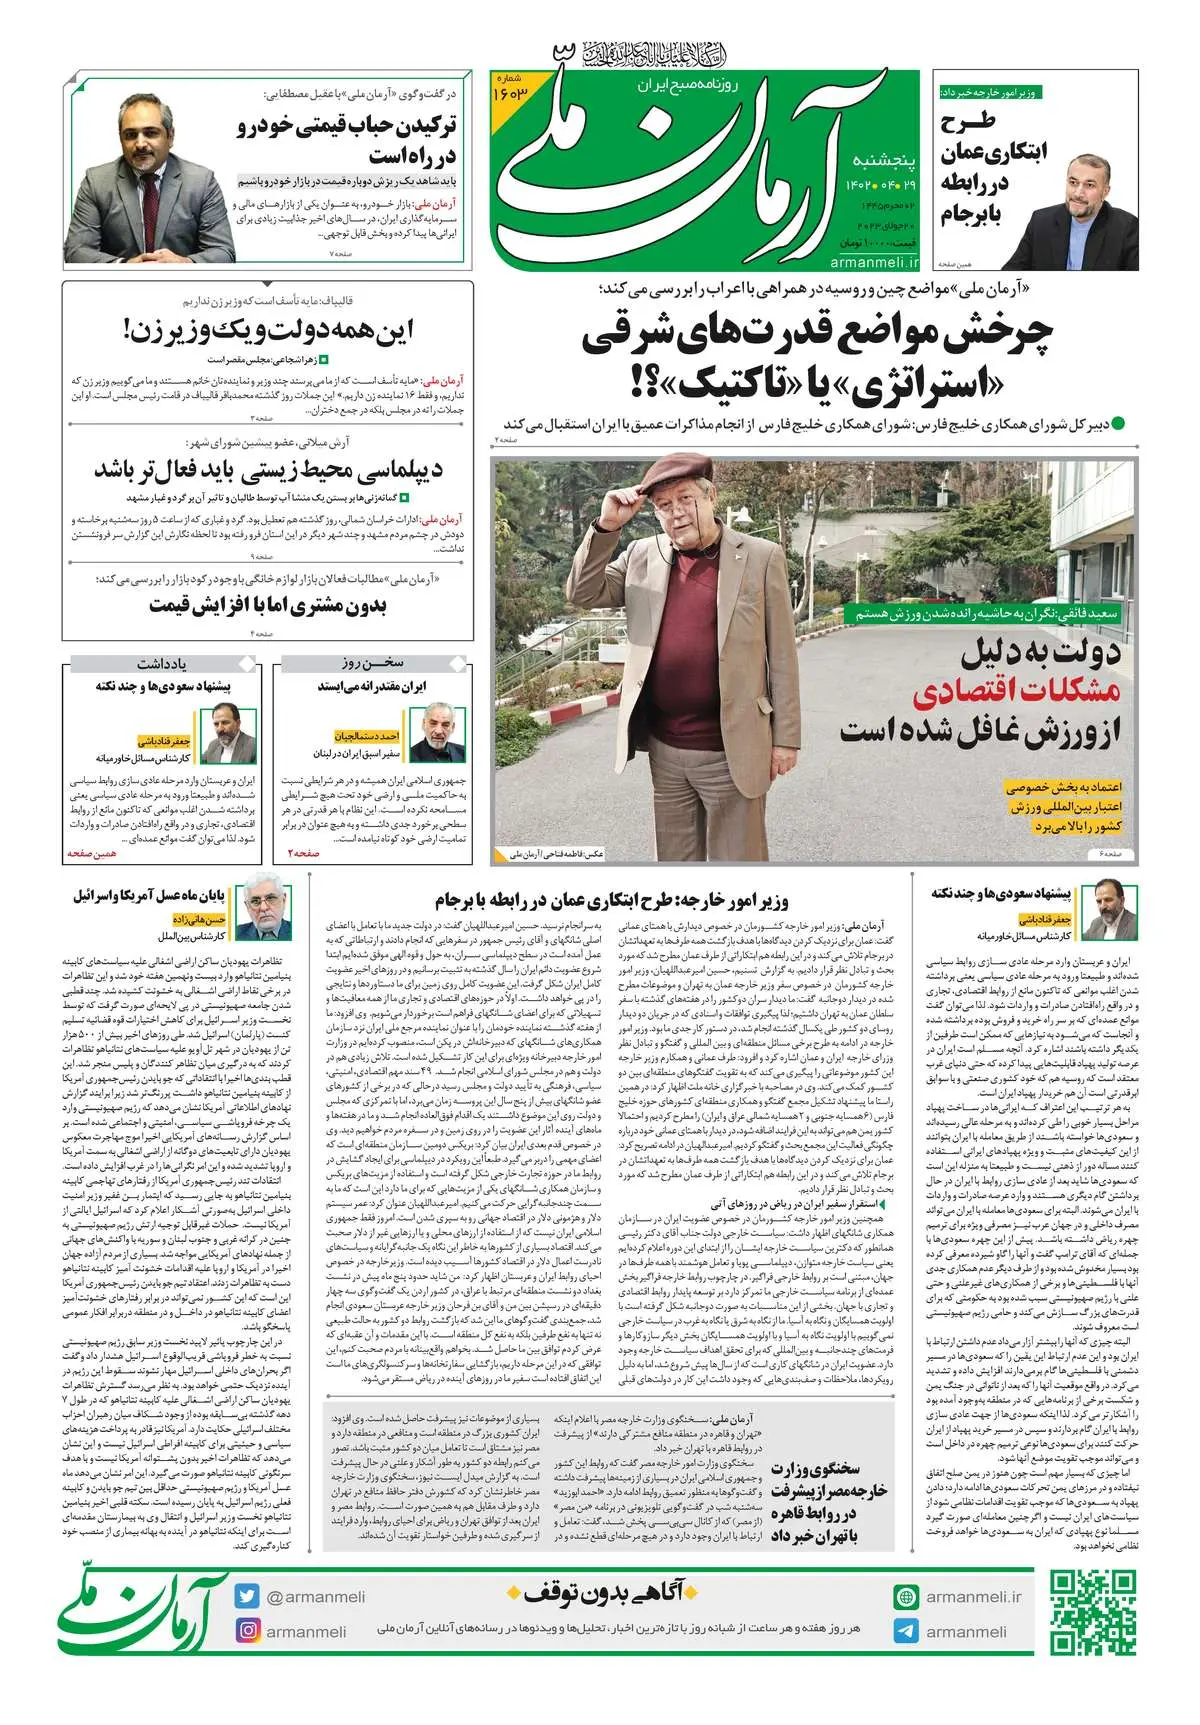 روزنامه آرمان ملی - پنجشنبه 29تیر - شماره 1603